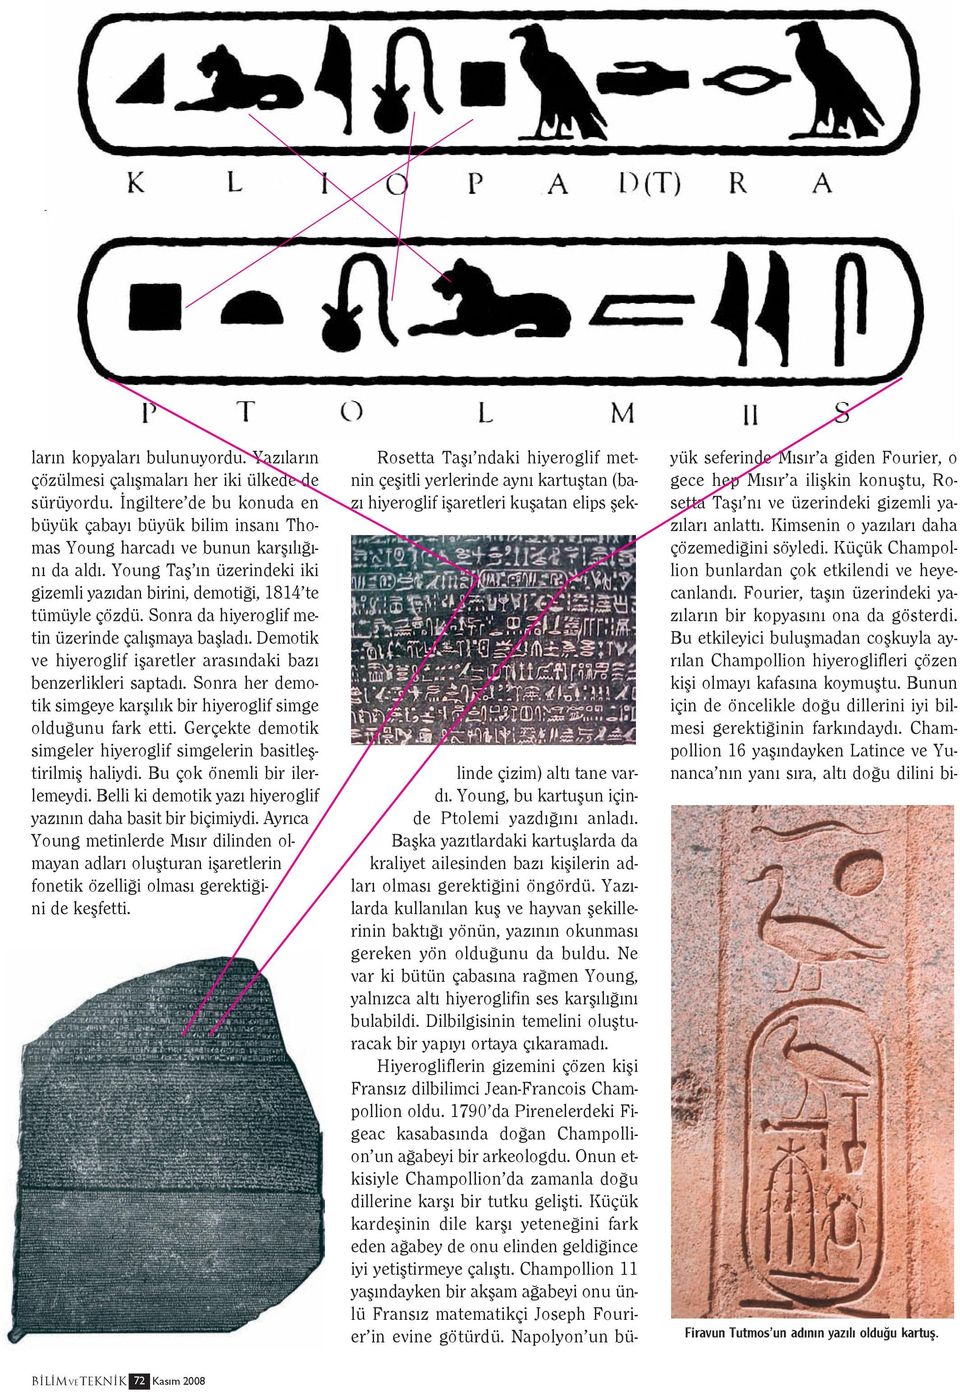 Demotik ve hiyeroglif işaretler arasındaki bazı benzerlikleri saptadı. Sonra her demotik simgeye karşılık bir hiyeroglif simge olduğunu fark etti.